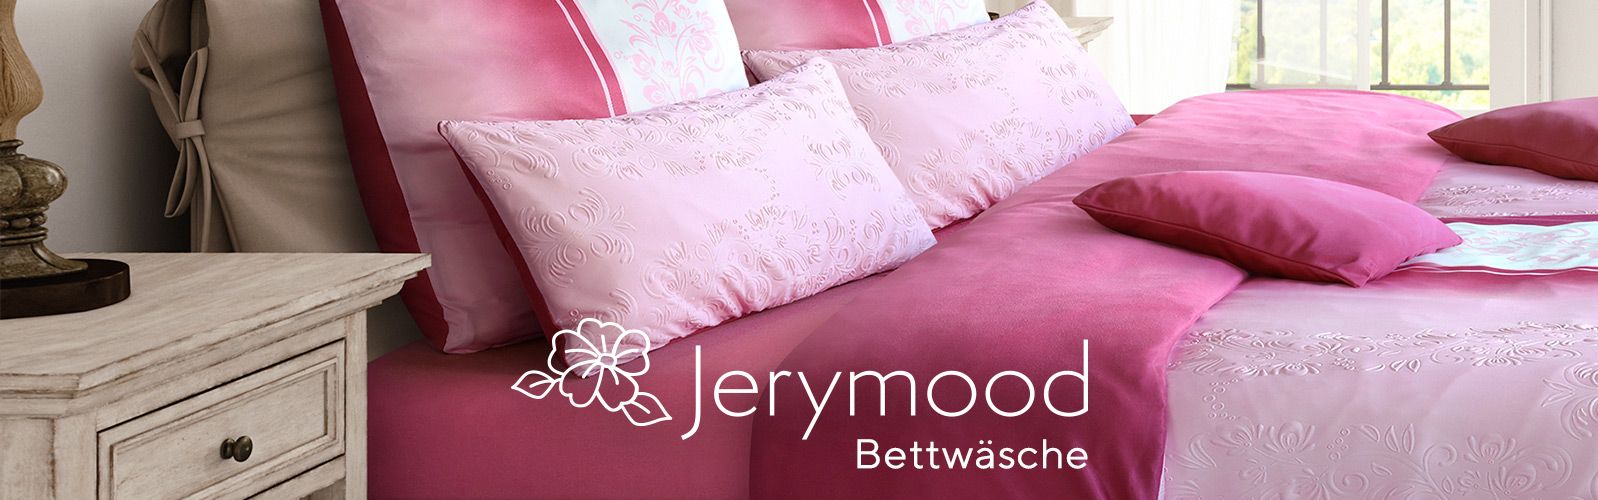 JERYMOOD Bettwäsche